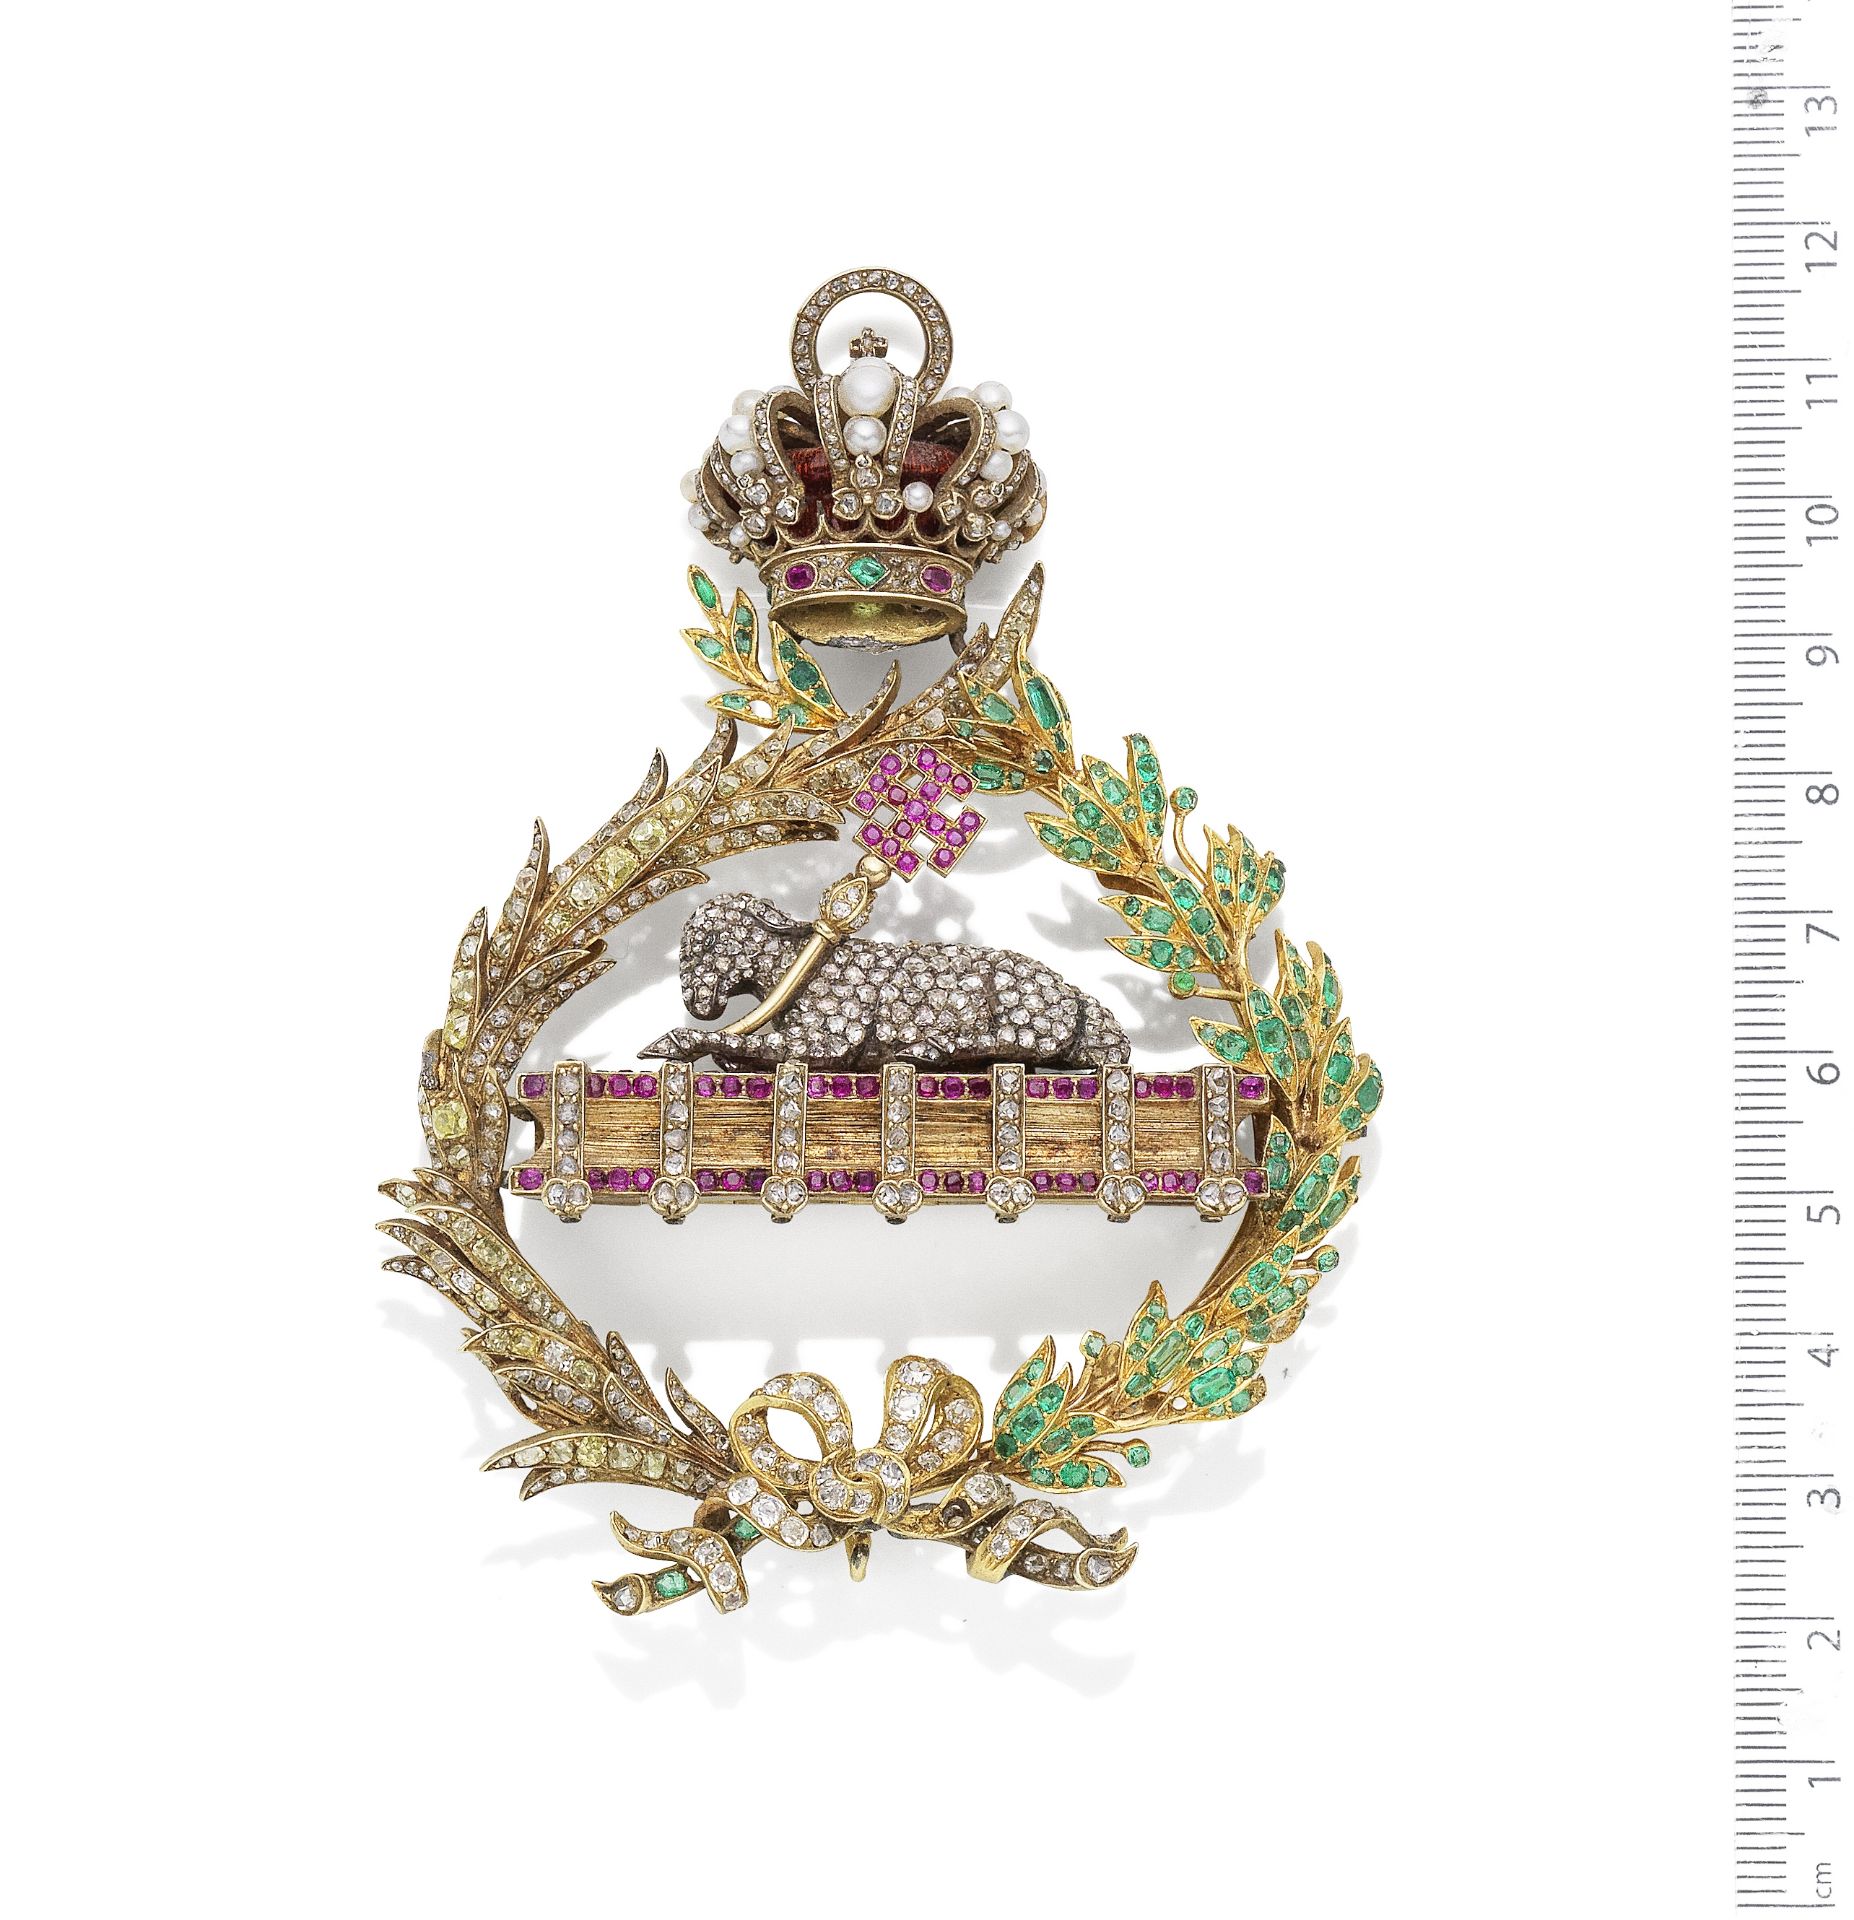 A 19th century gold and gem-set Agnus Dei reliquary pendant